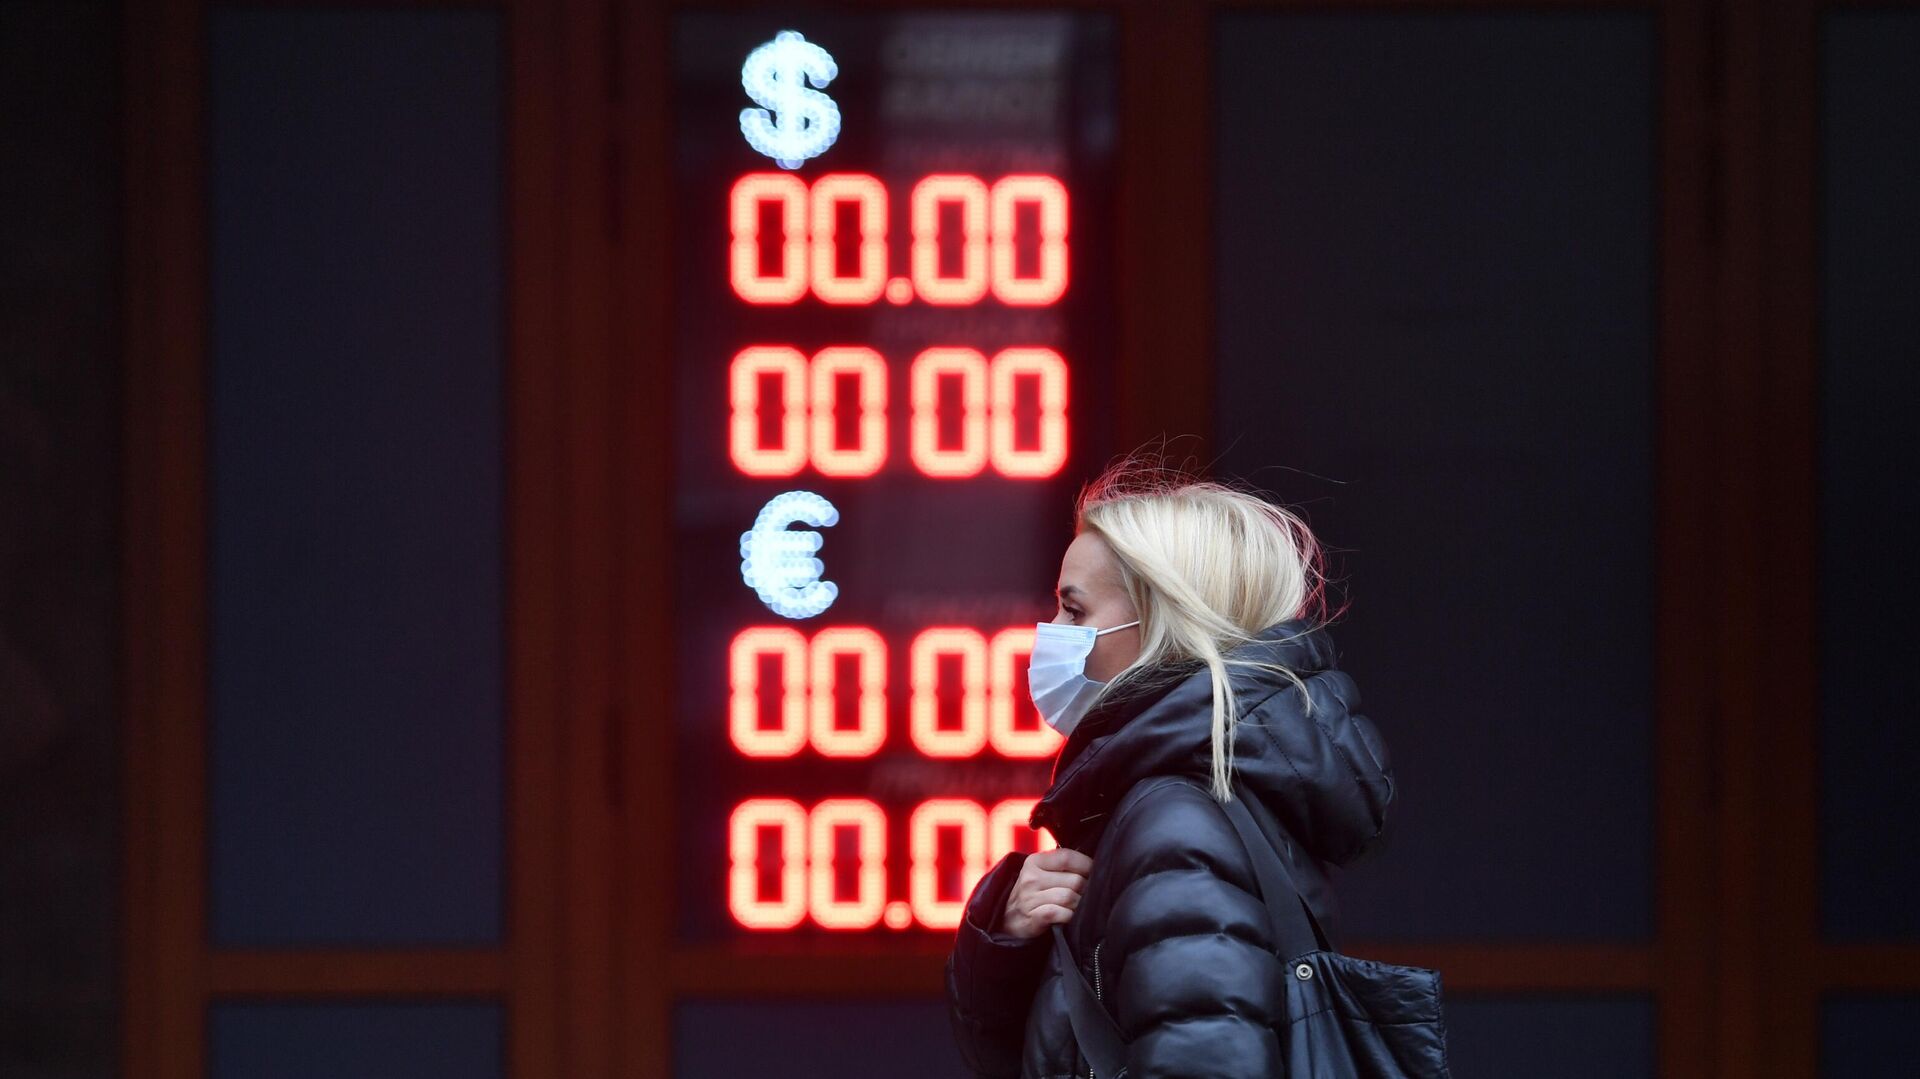 Официальный курс евро на выходные и понедельник снизился на 31 копейку